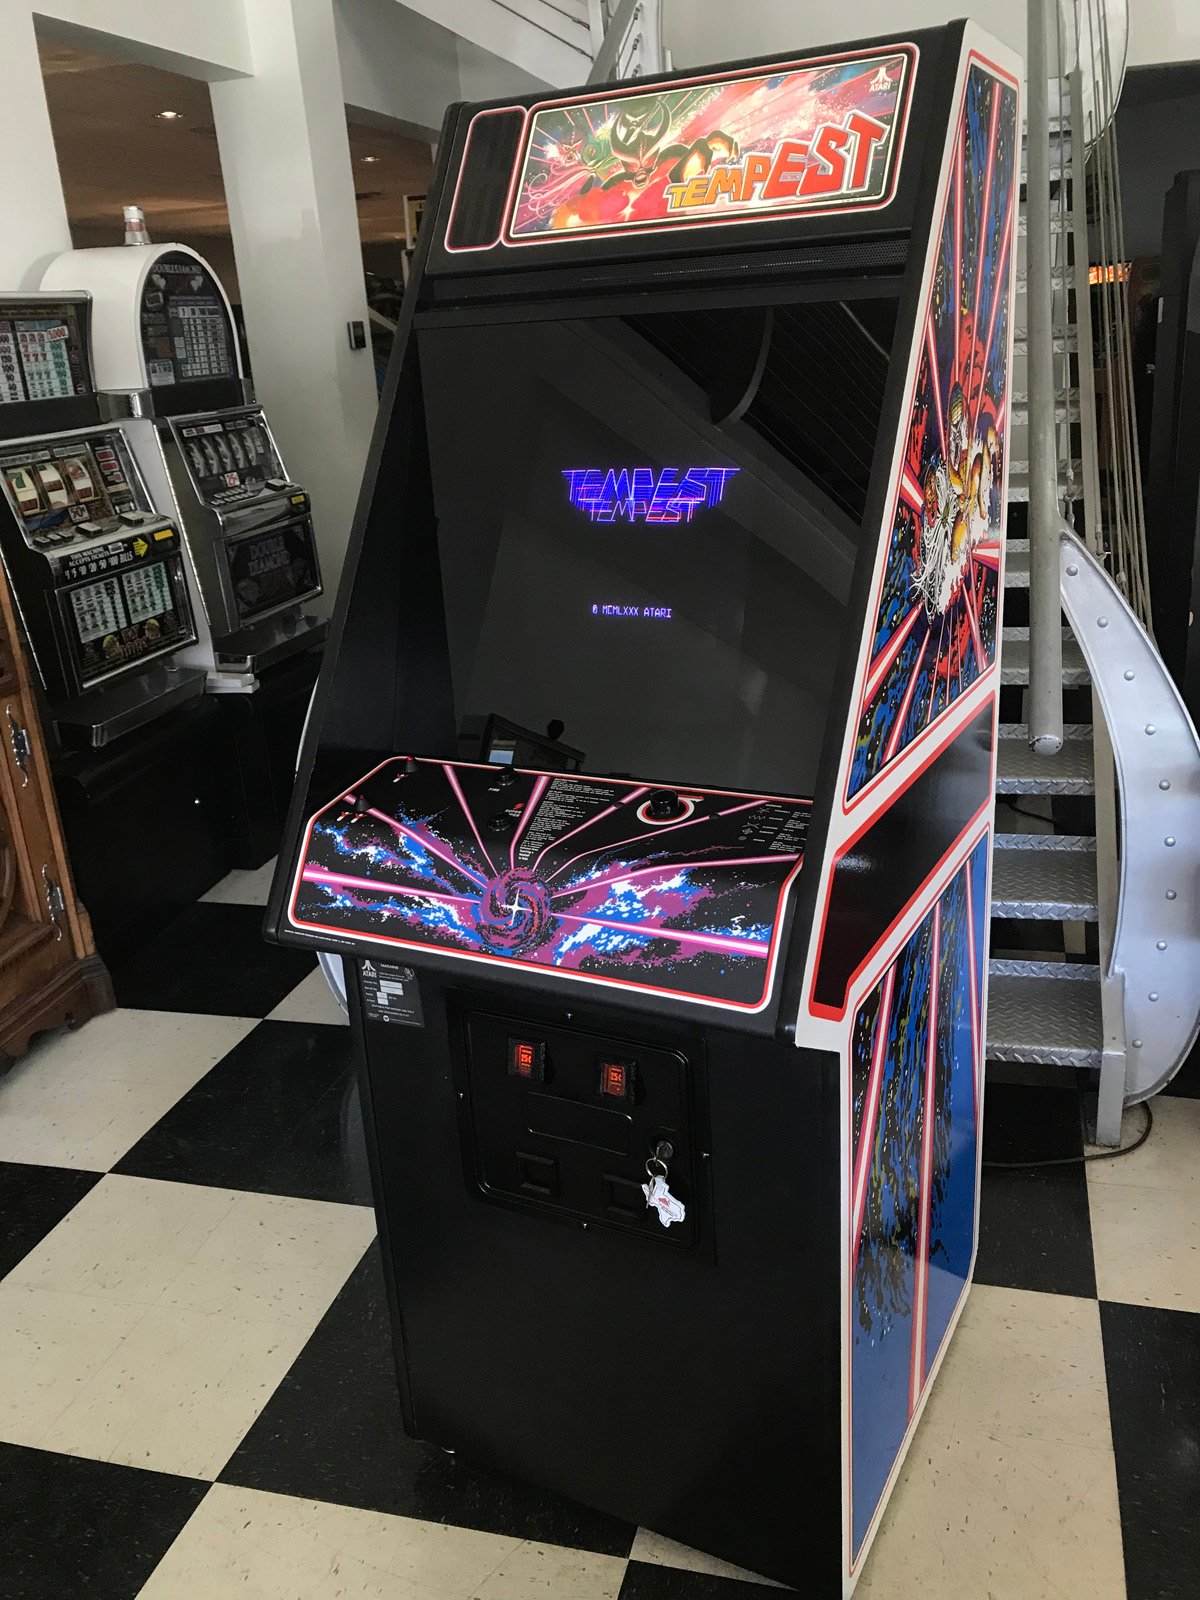 Polybius könnte einfach ein Prototyp des Arcade-Videospiels "Tempest" von Atari gewesen sein.